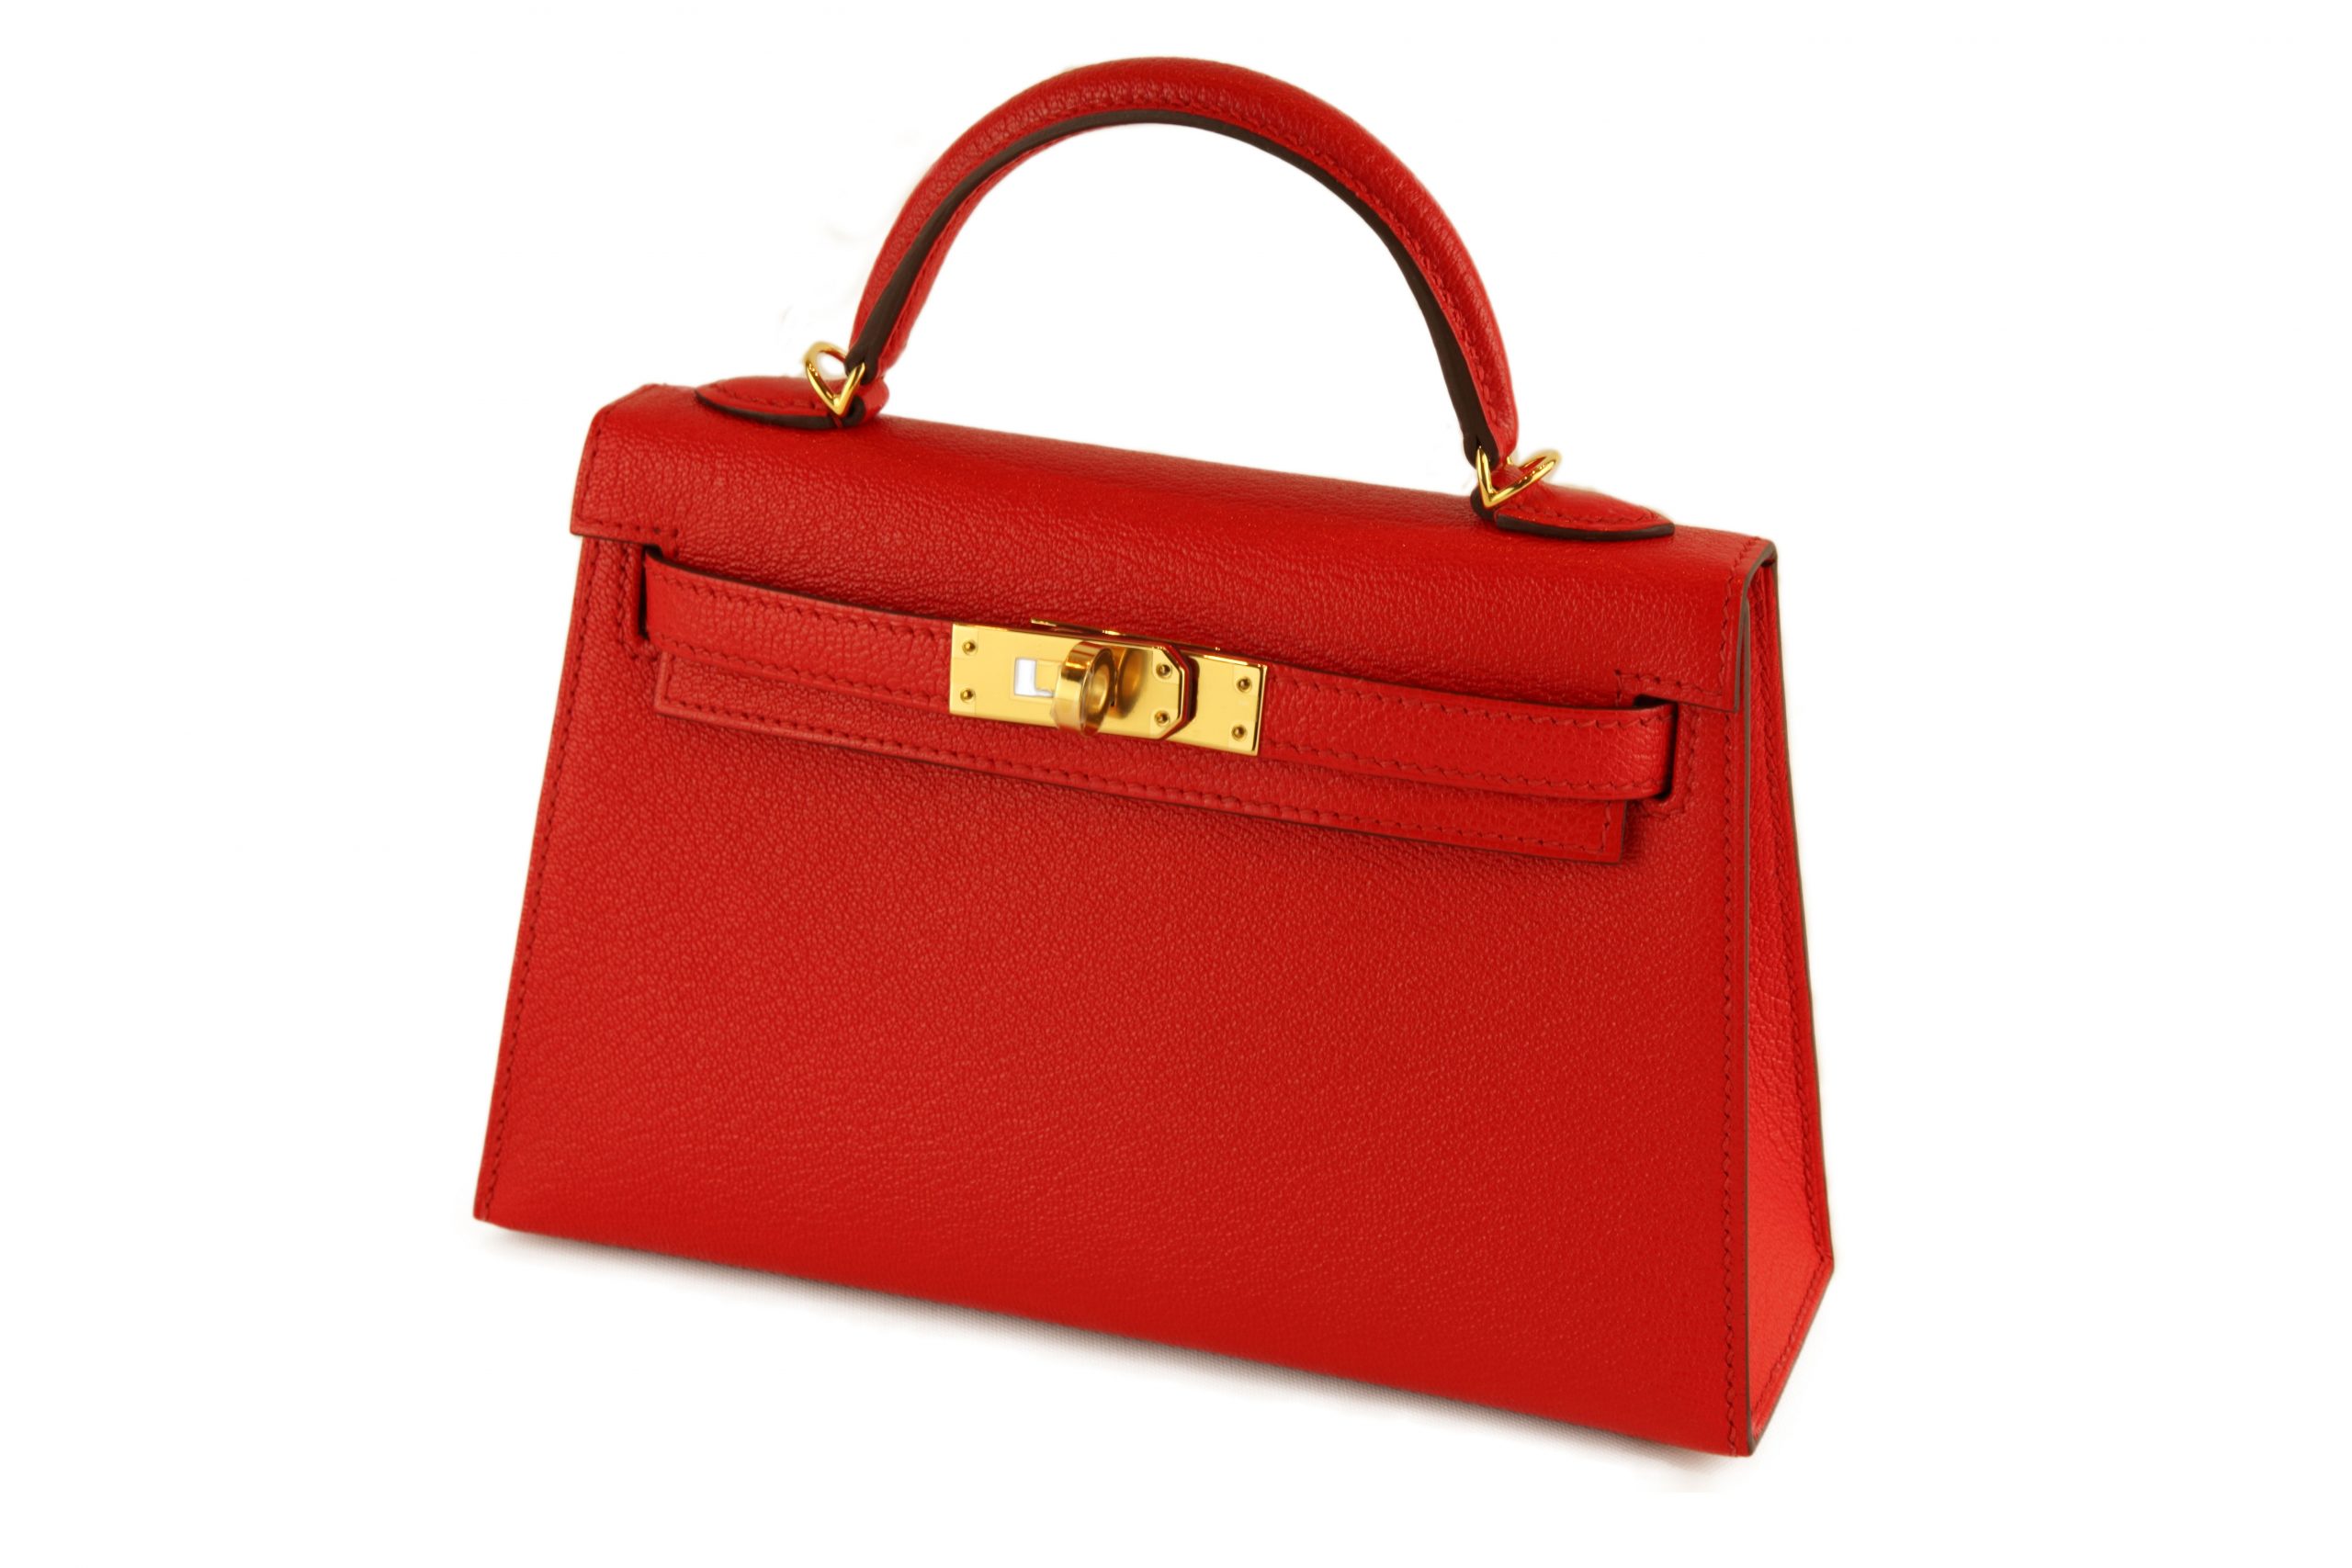 Hermès Kelly Sellier Mini II Chevre Mysore Rouge De Coeur GHW